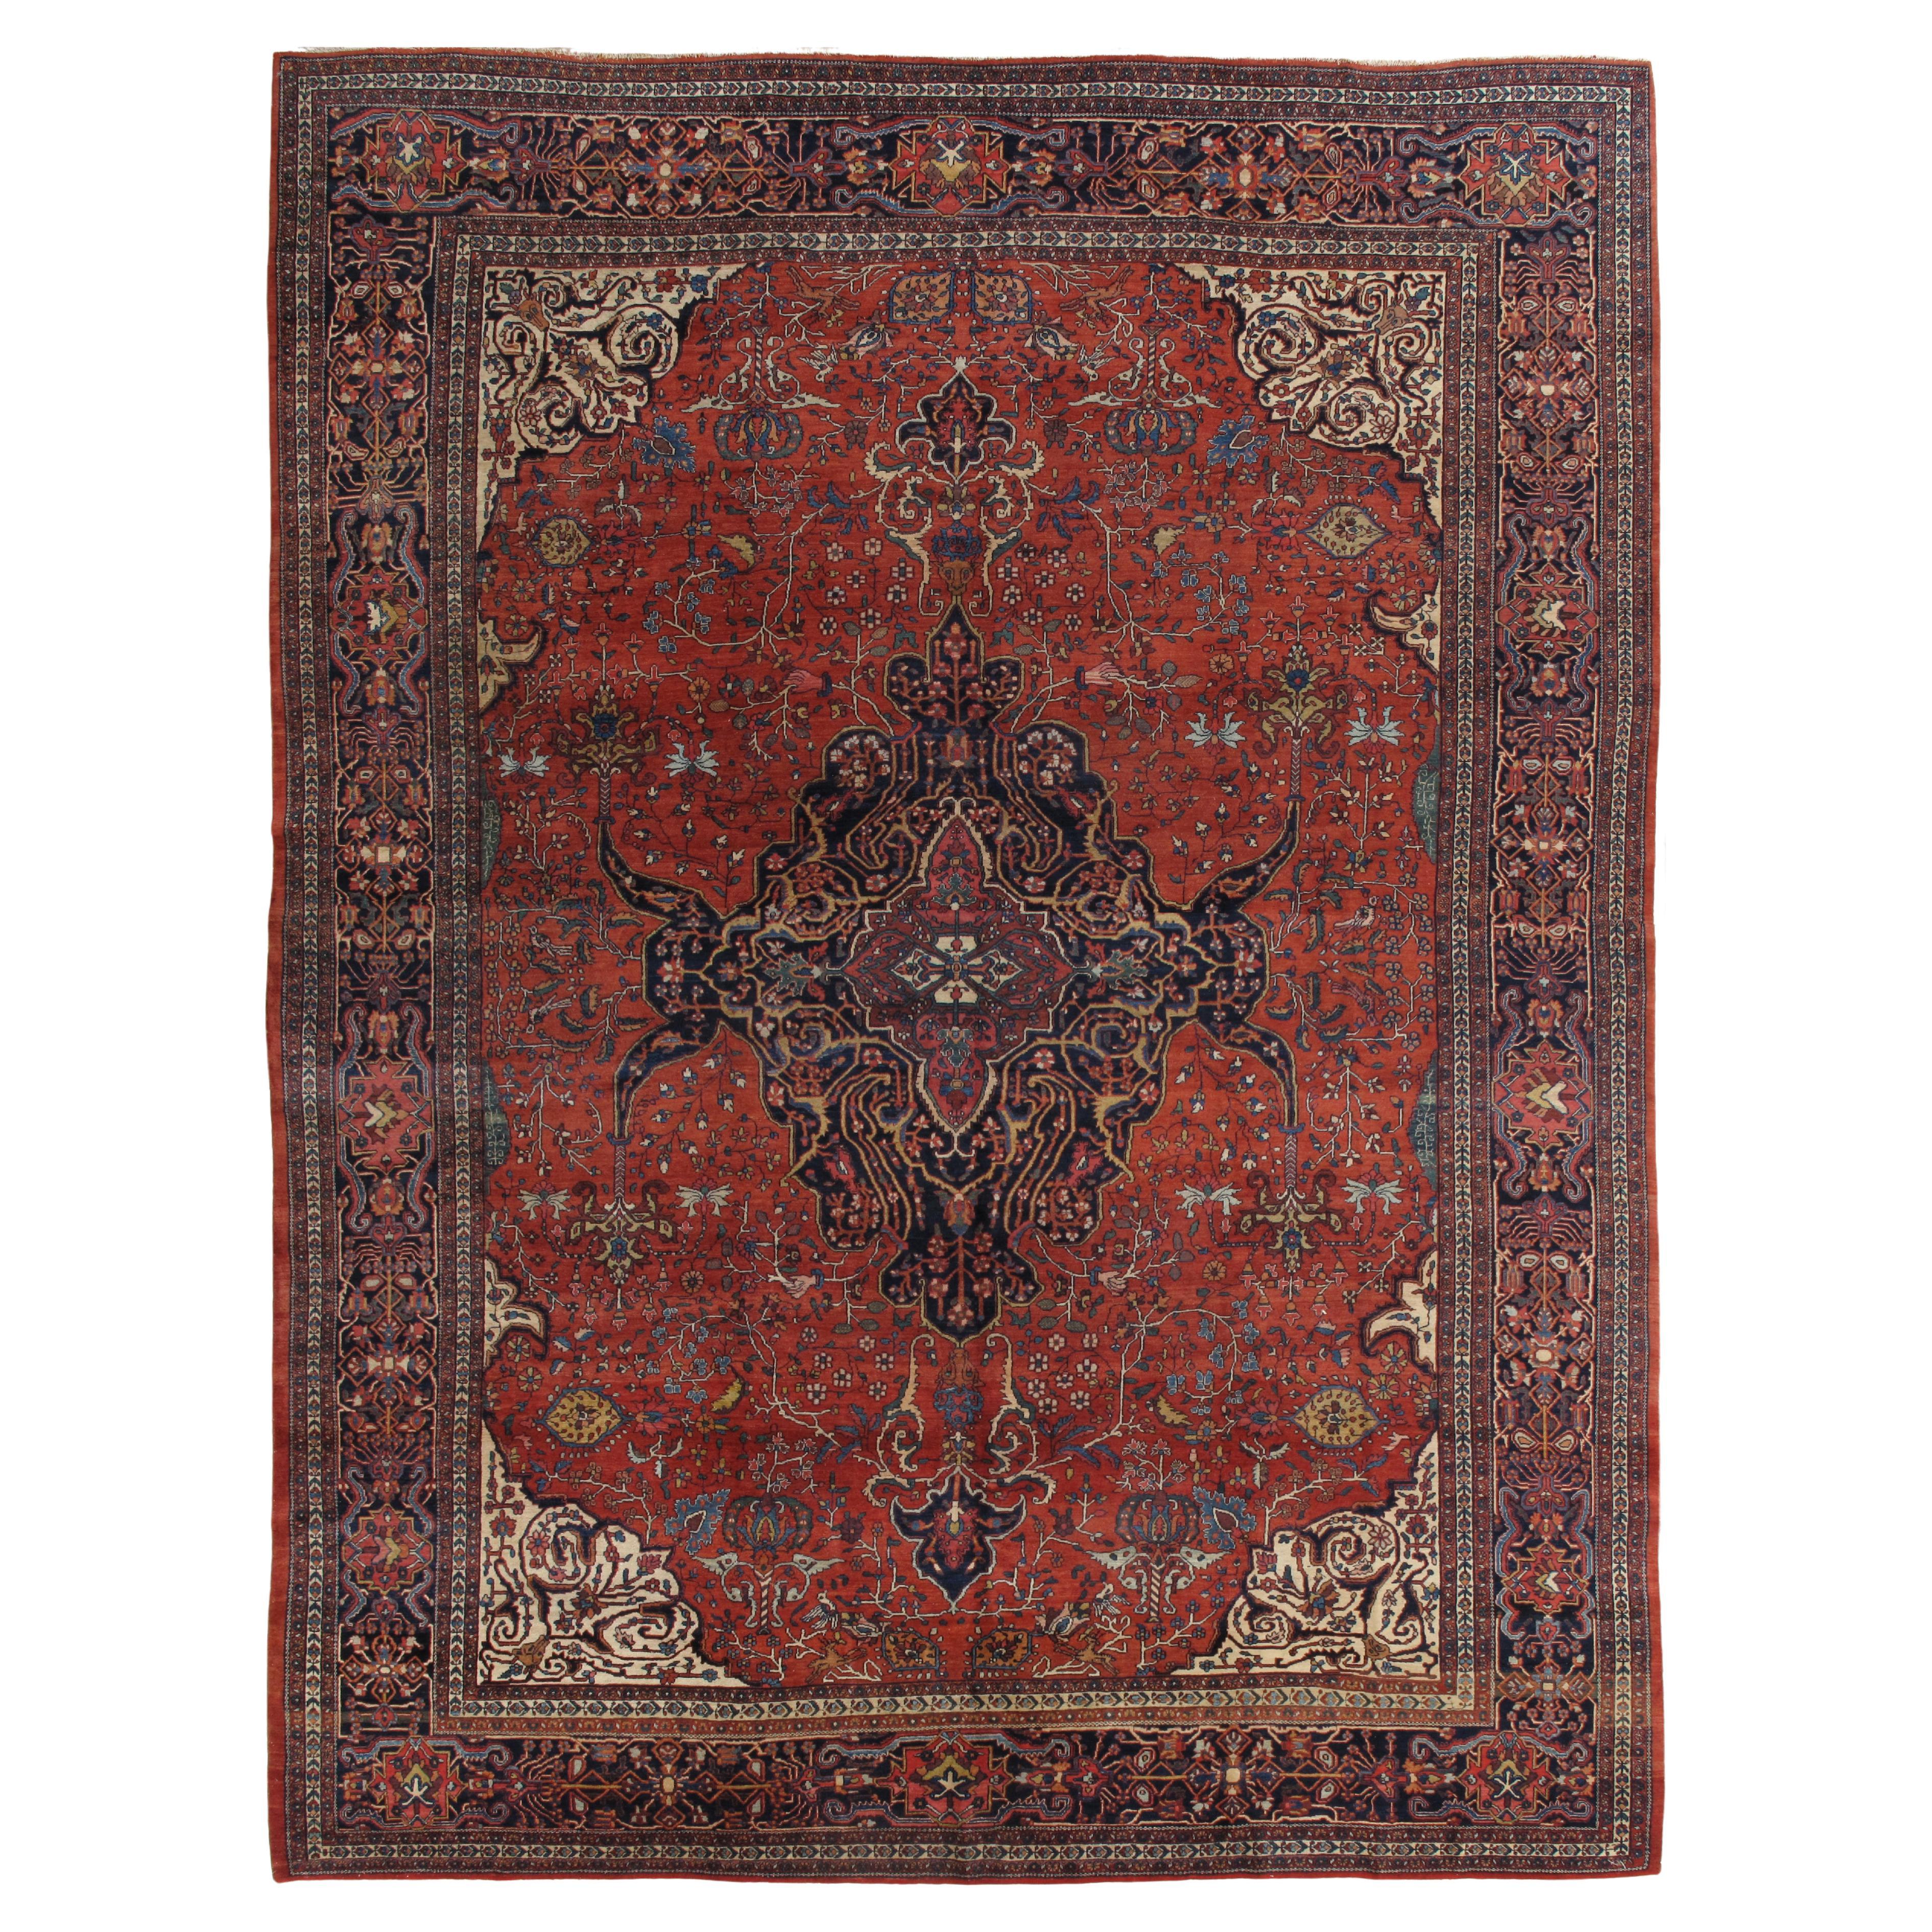 Tapis ancien Farahan Sarouk, tapis oriental fait à la main, rouge, bleu marine, détails fins